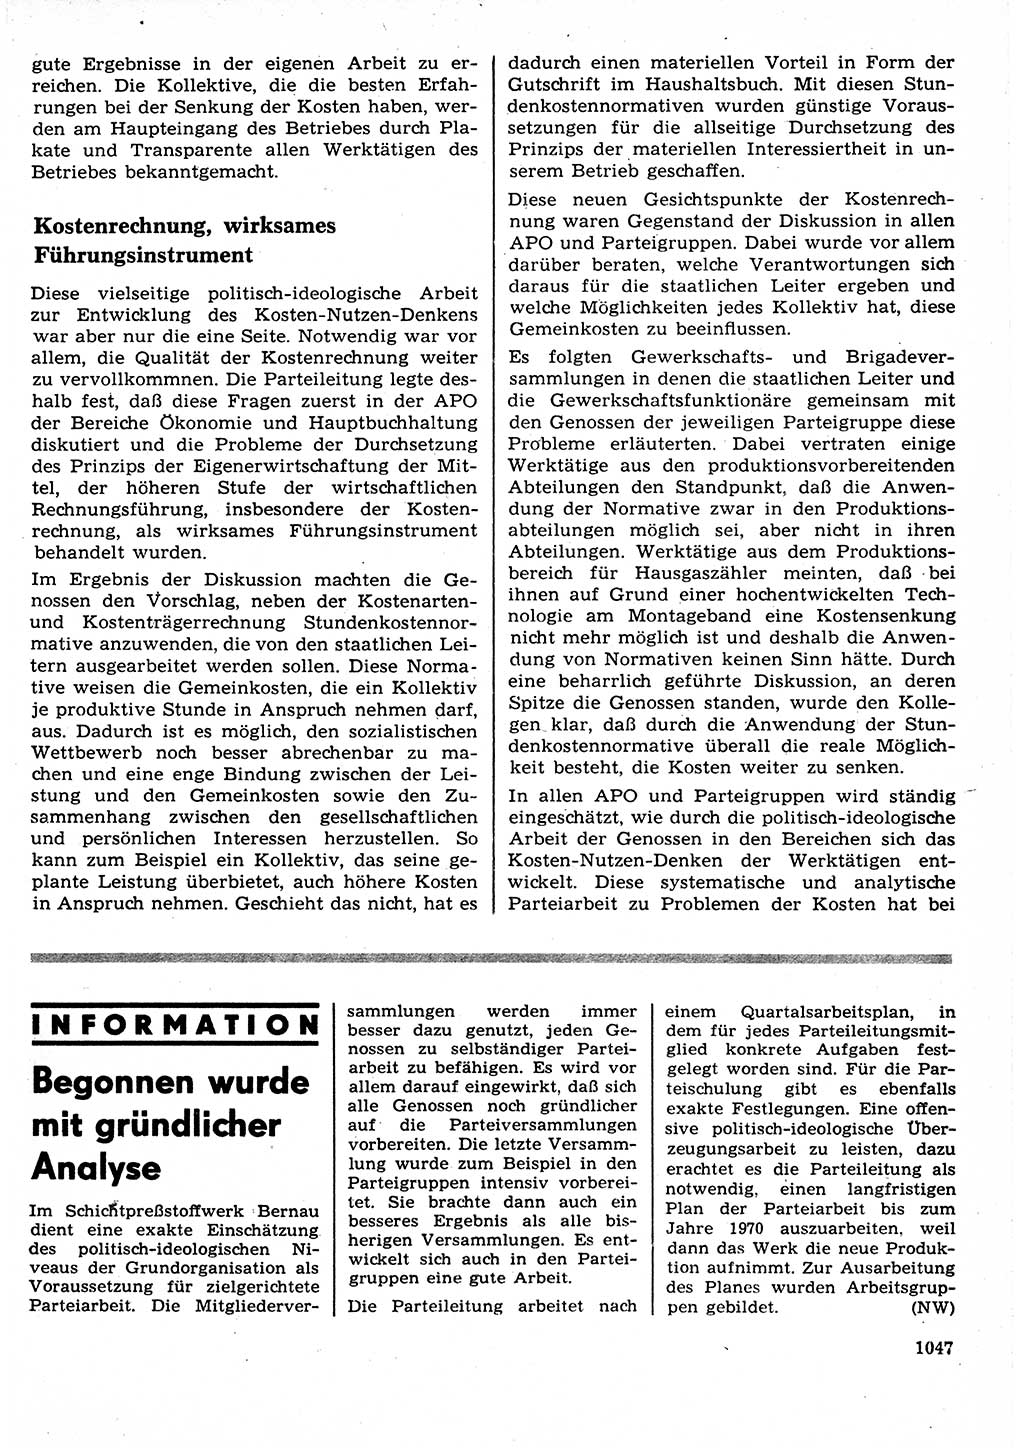 Neuer Weg (NW), Organ des Zentralkomitees (ZK) der SED (Sozialistische Einheitspartei Deutschlands) für Fragen des Parteilebens, 23. Jahrgang [Deutsche Demokratische Republik (DDR)] 1968, Seite 1031 (NW ZK SED DDR 1968, S. 1031)